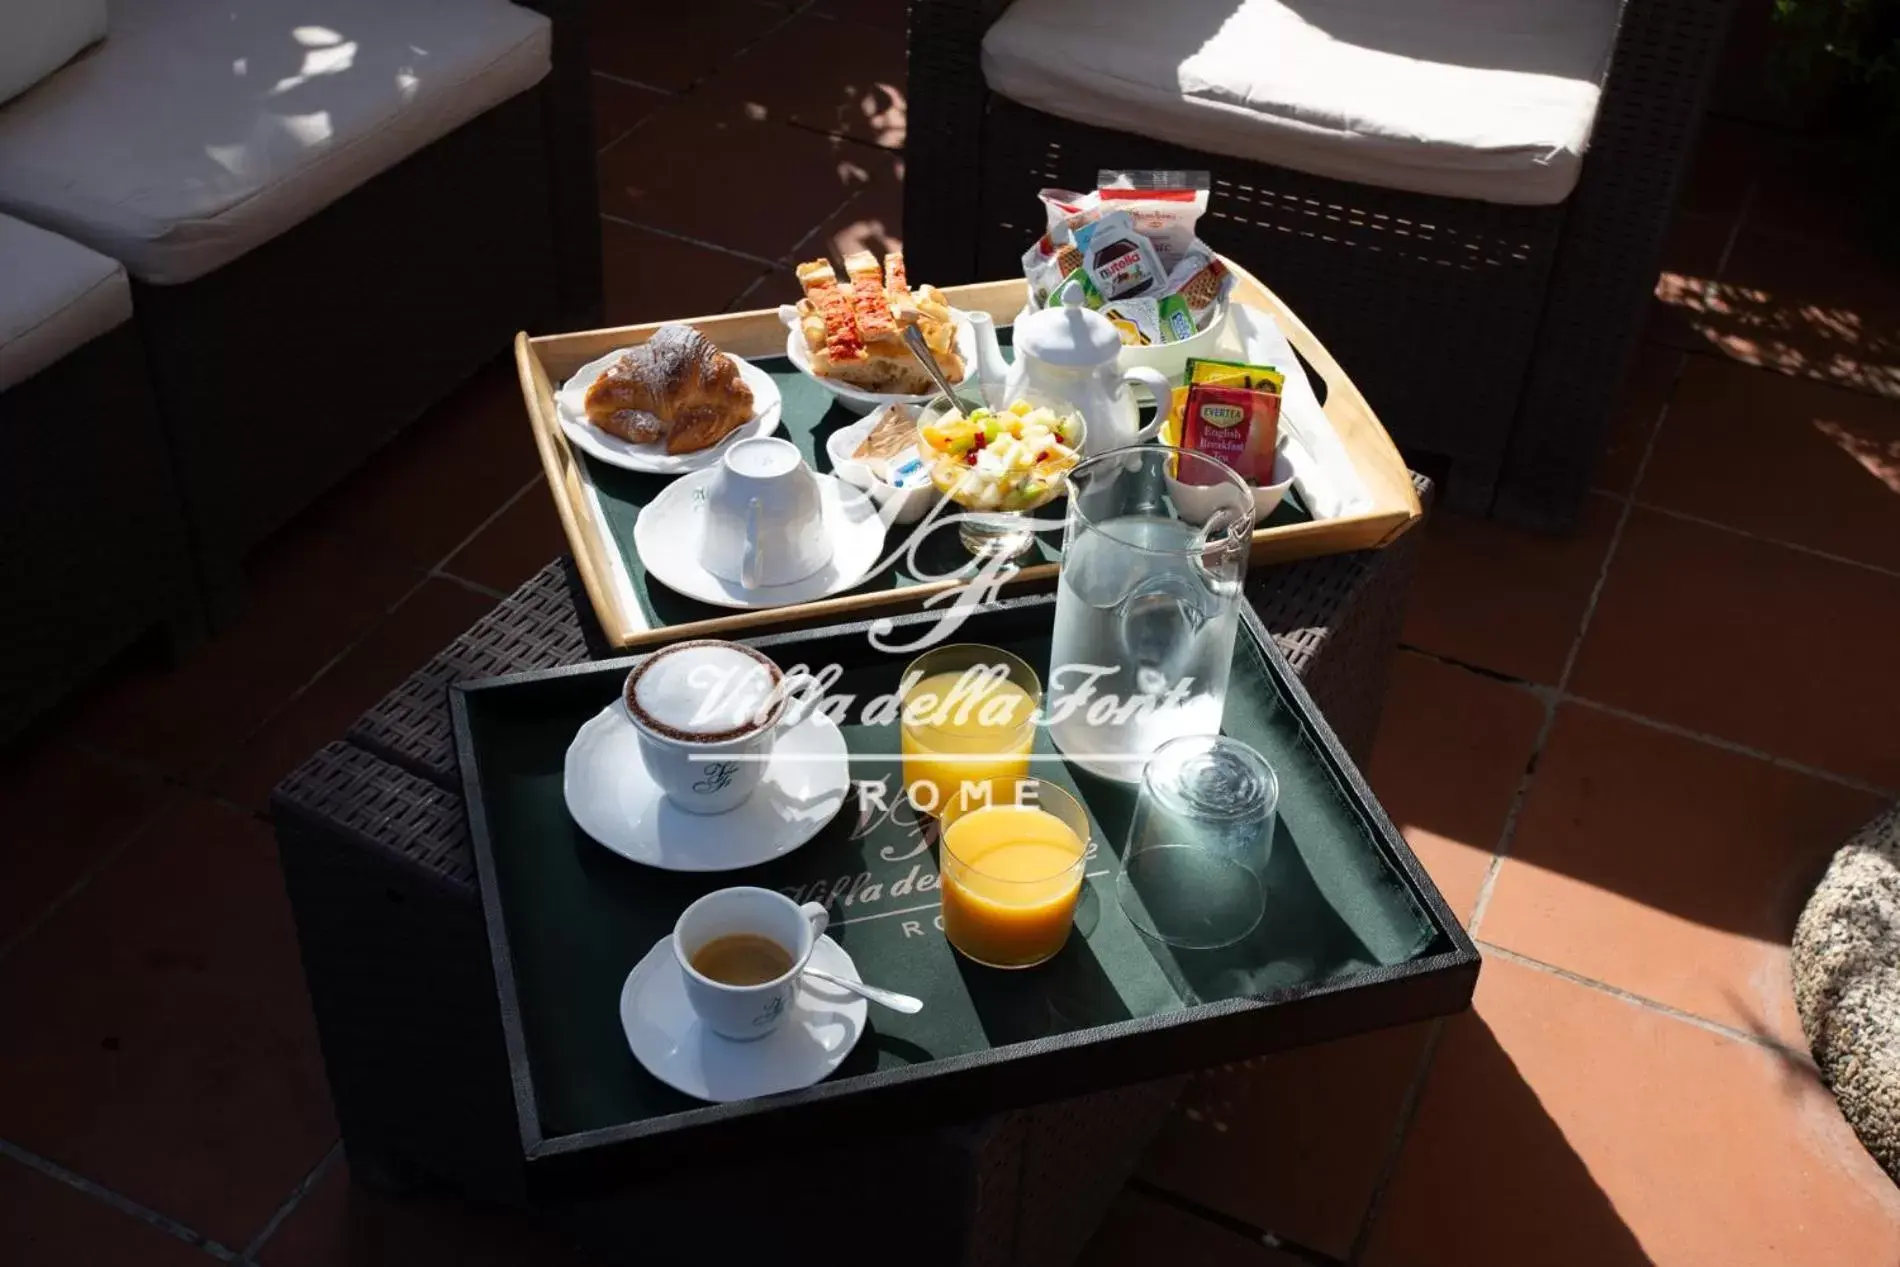 Buffet breakfast in Villa della Fonte